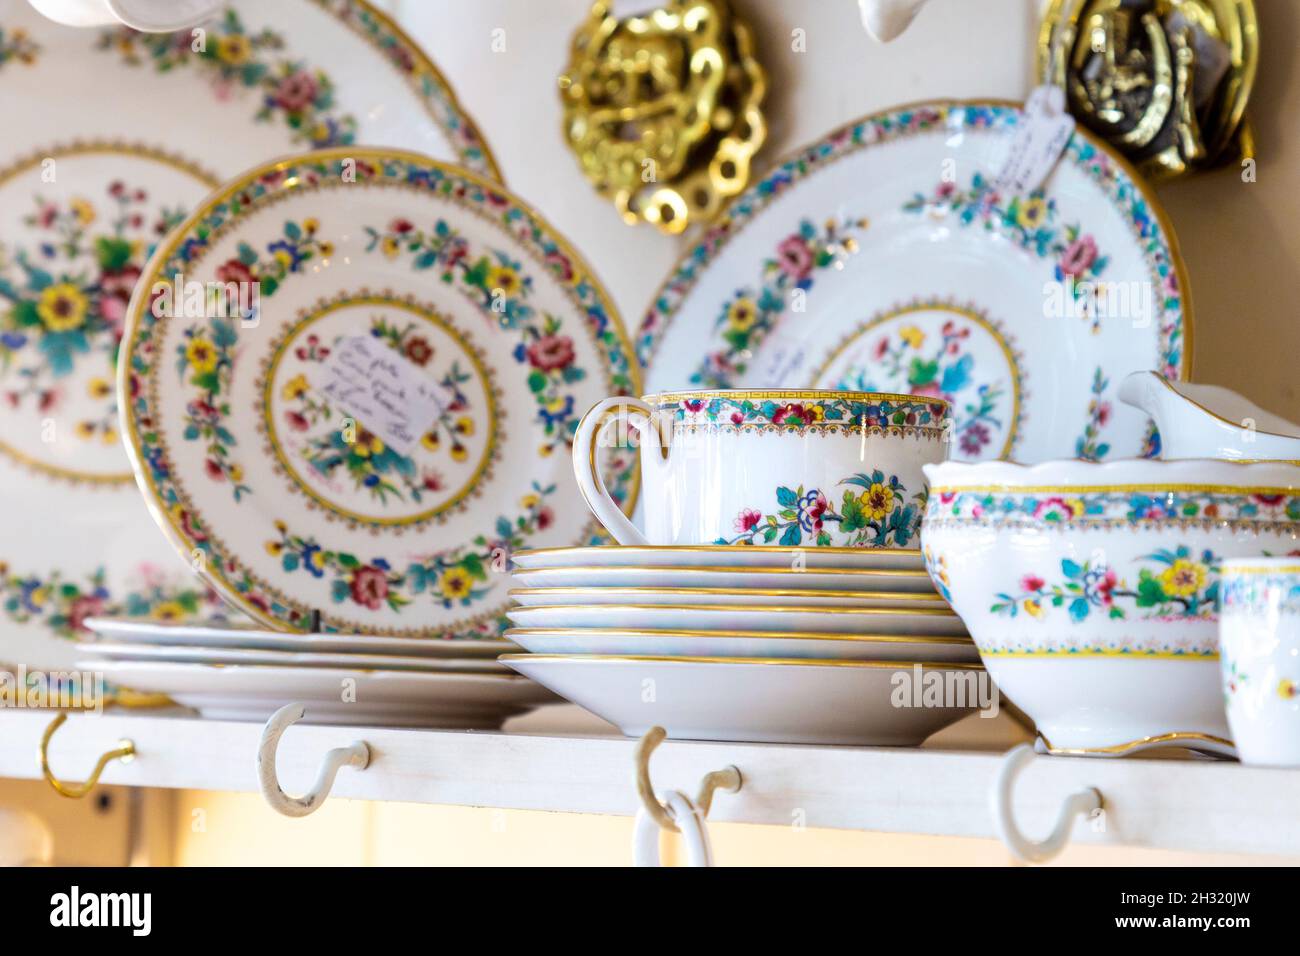 Altmodische Teetasse und Geschirr aus Porzellan, die in einem Antiquitätengeschäft ausgestellt werden (Hampton Court Emporium, East Molesey, UK) Stockfoto